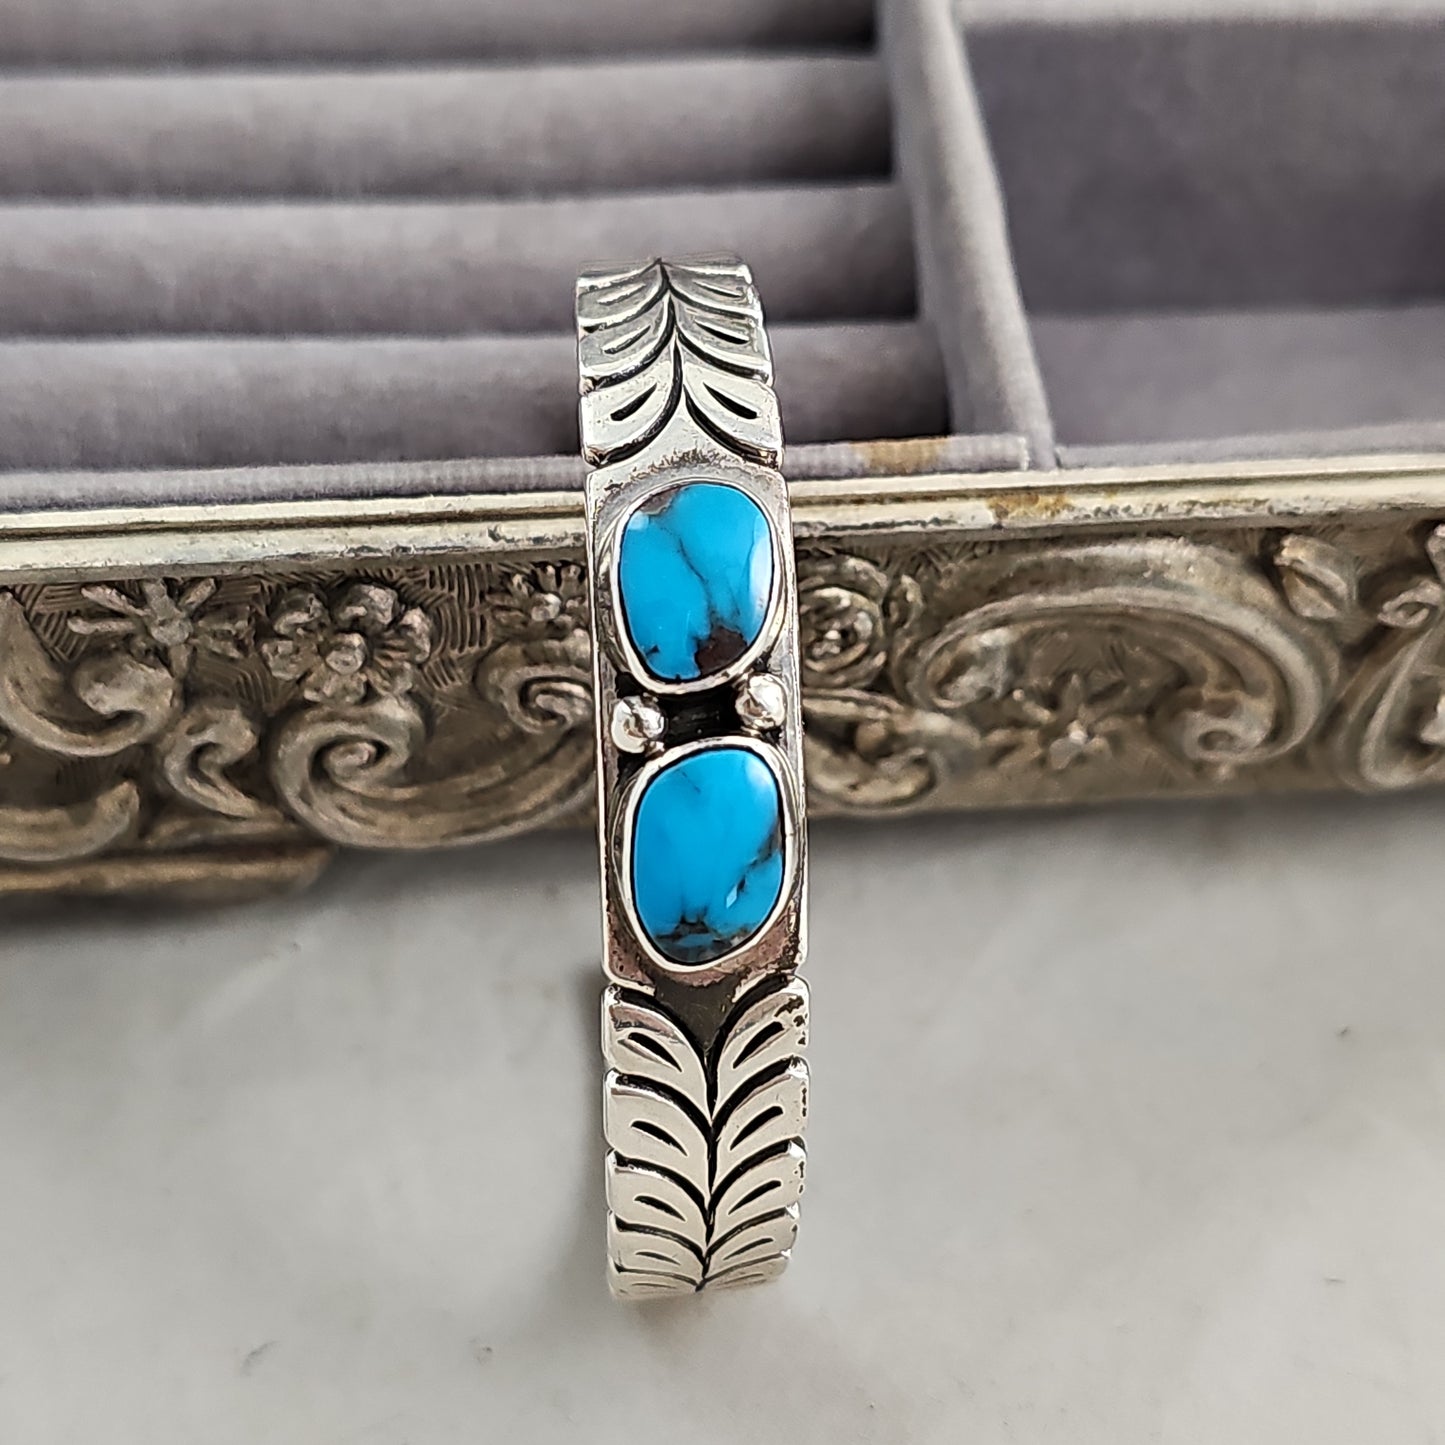 Double stone turquoise bracelet